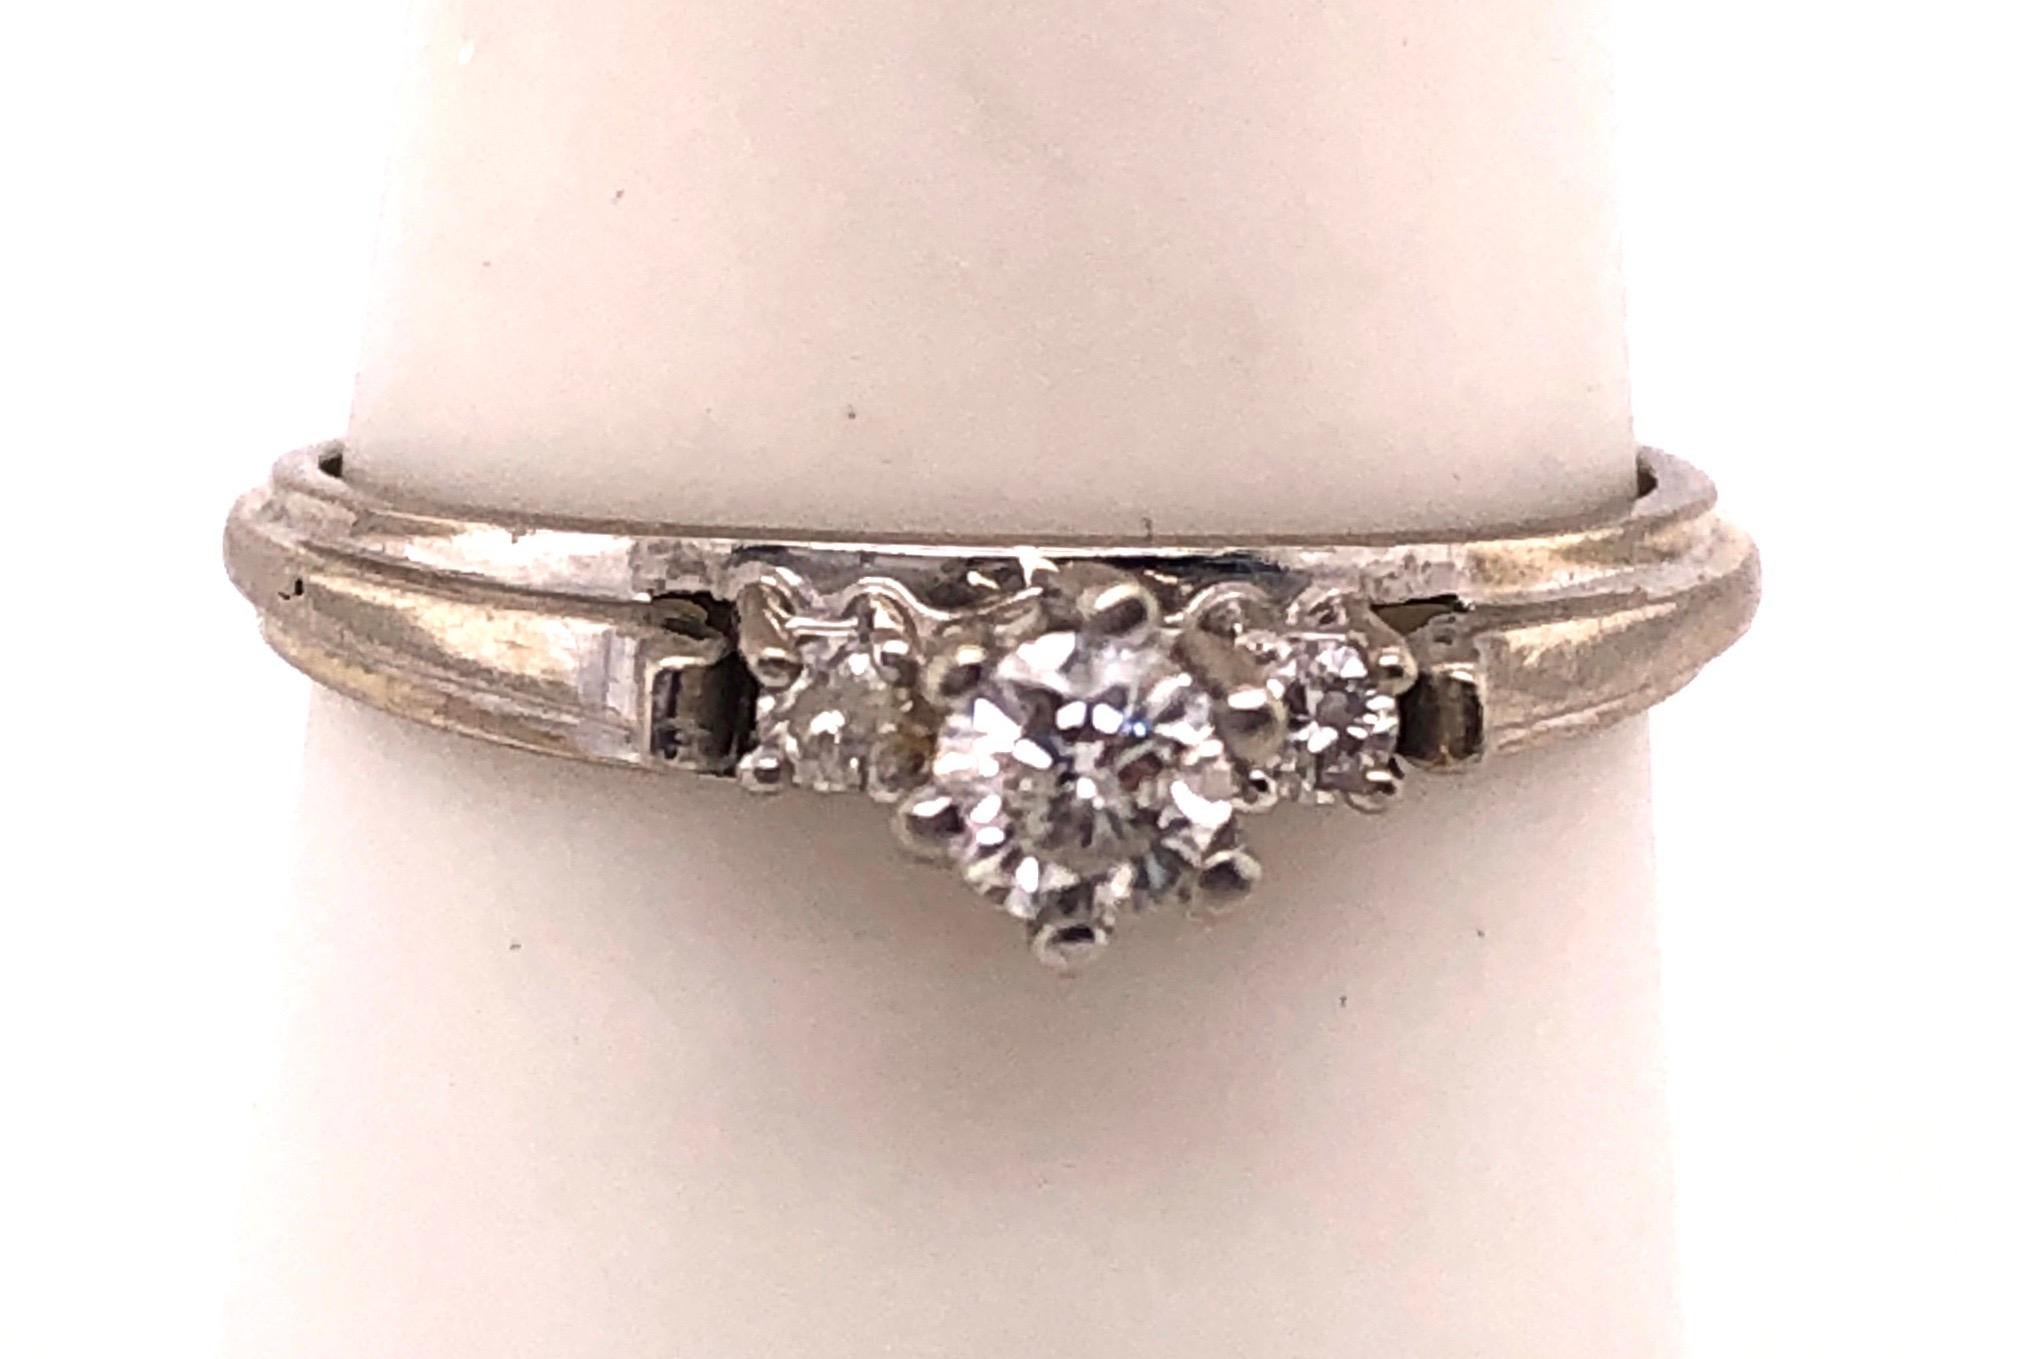 14 Karat White Gold Diamond Engagement Ring.
.20 Total diamond weight.
Size 8
2.4 grams total weight